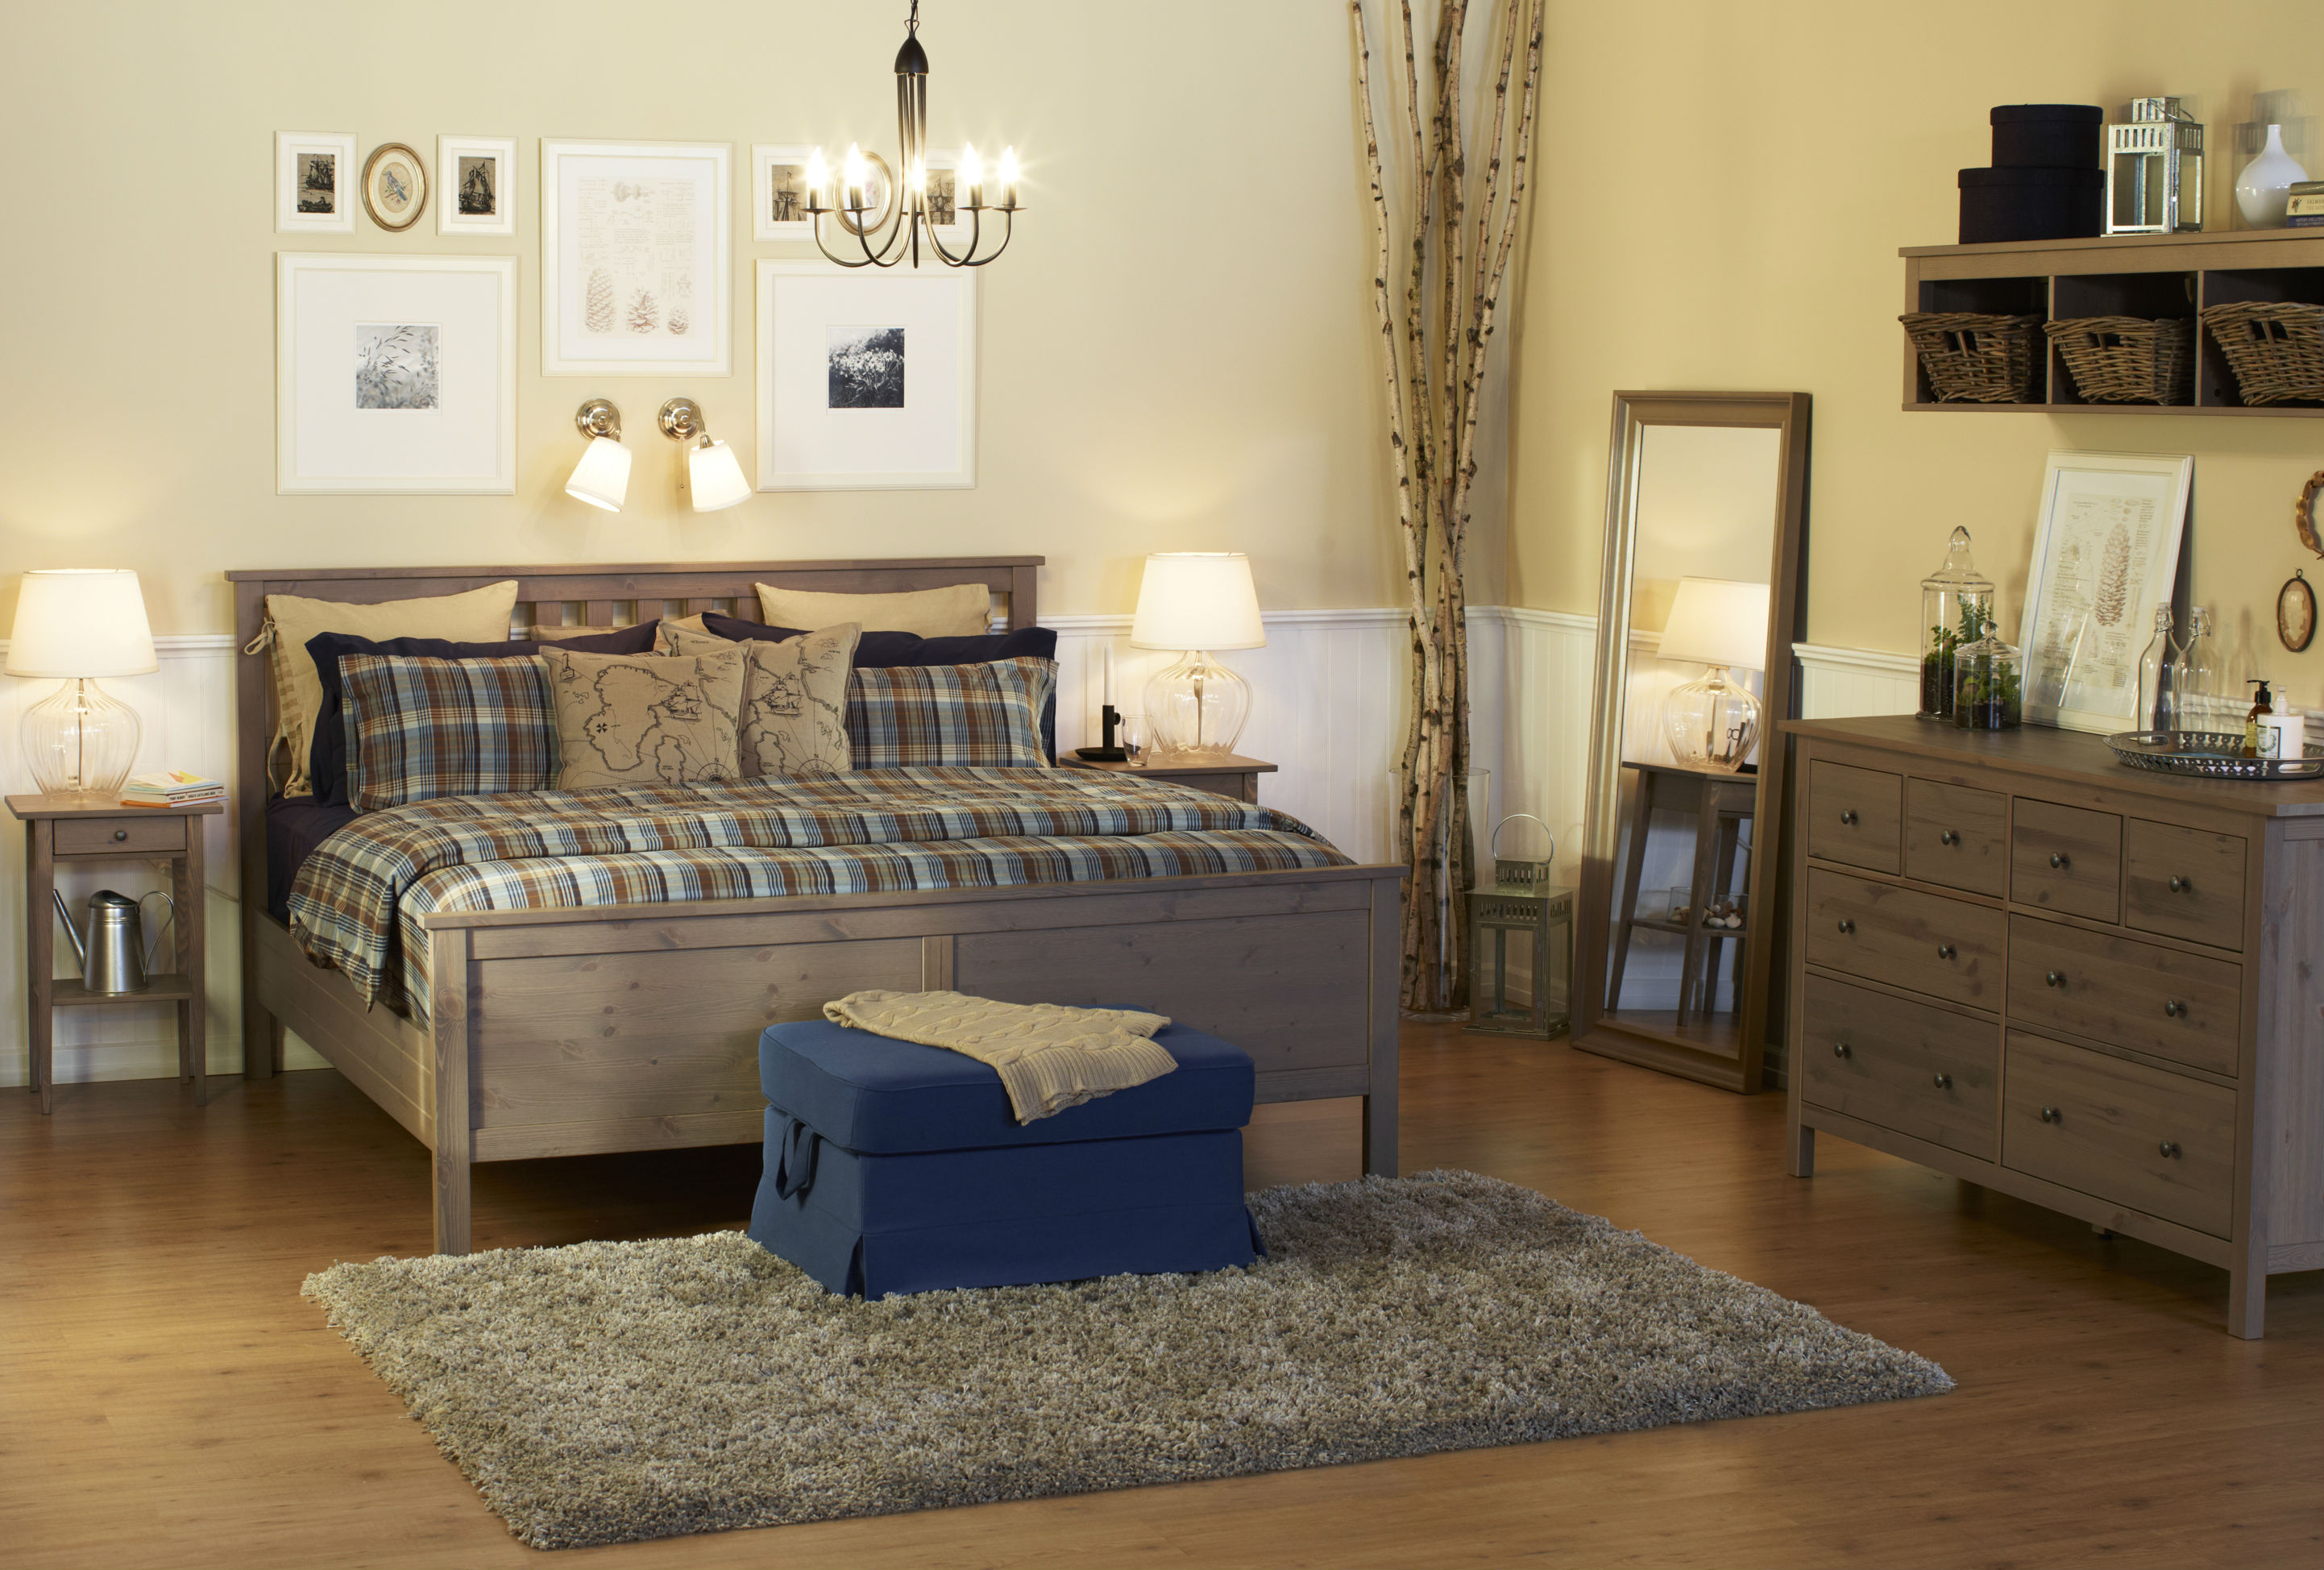 ikea hemnes grey bedroom furniture